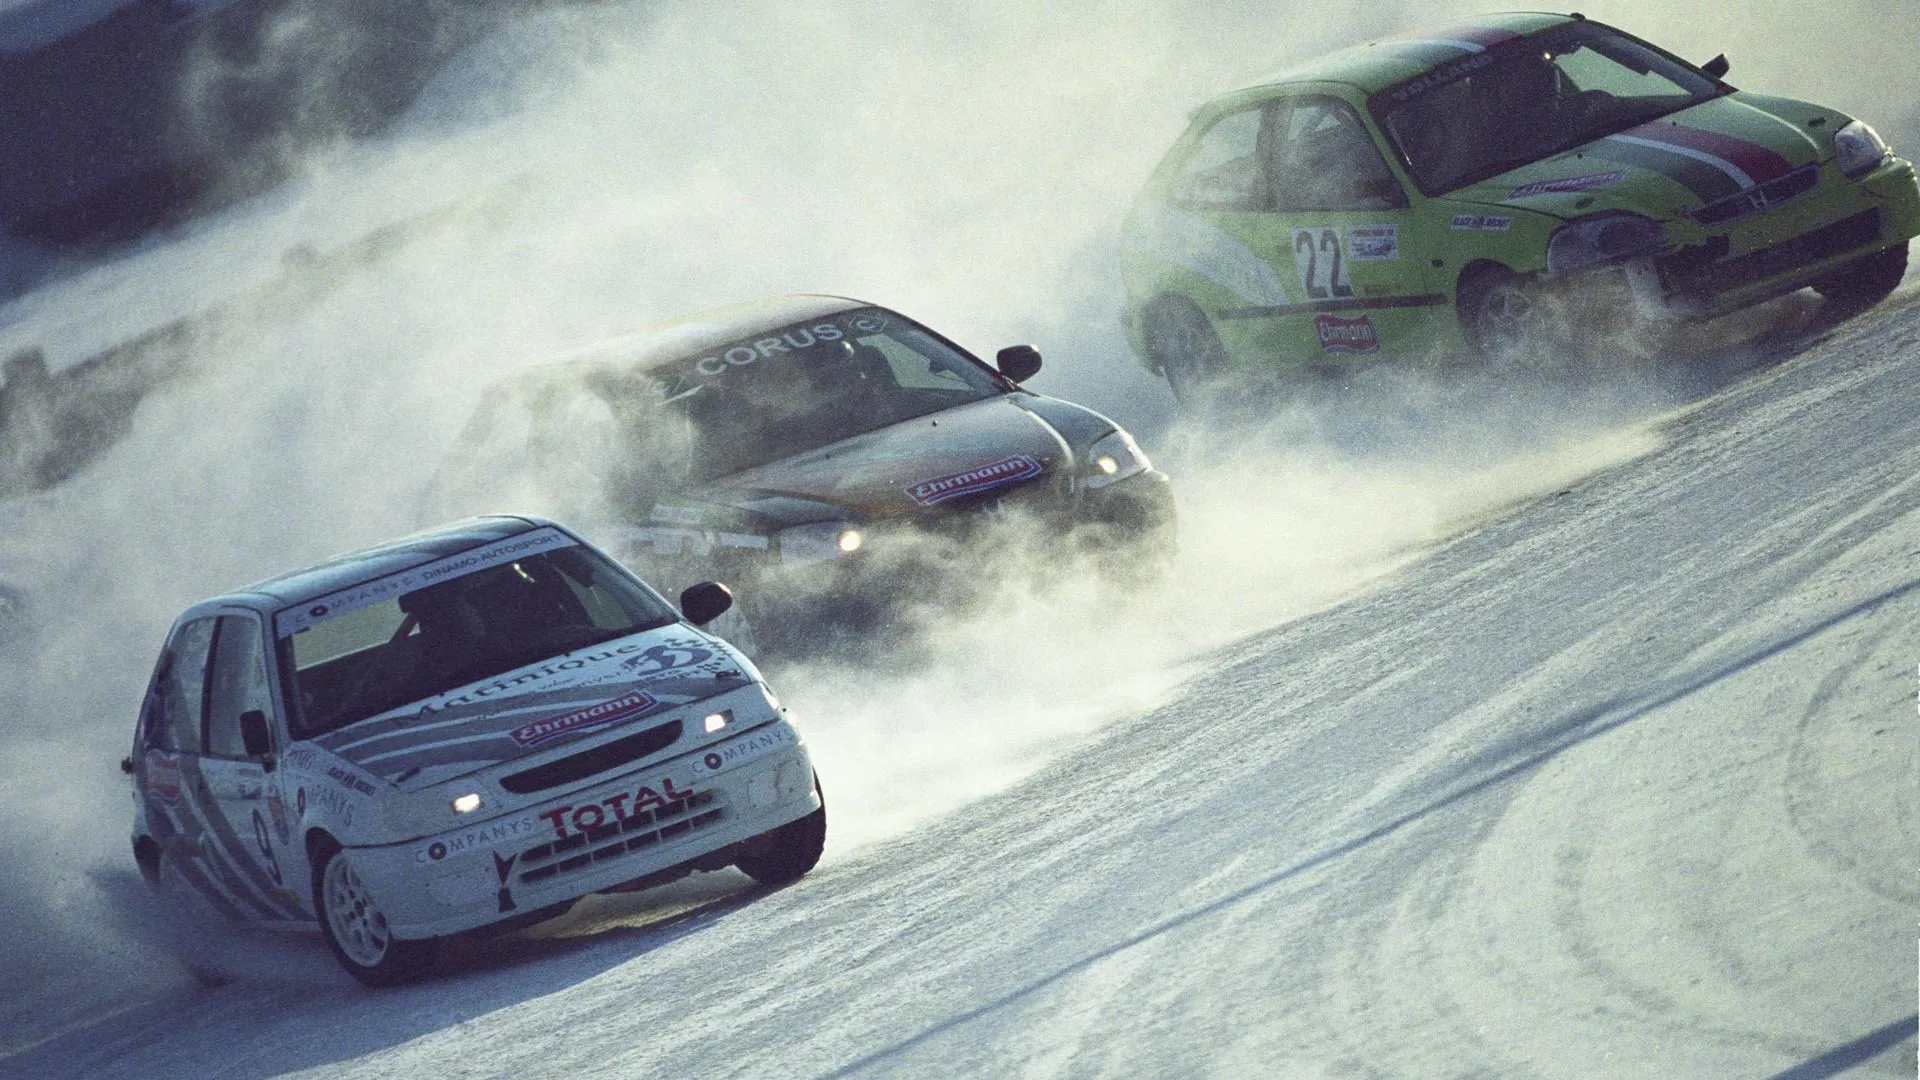 Чемпионат по трековым гонкам на льду начнется 19 января в Люберецком районе